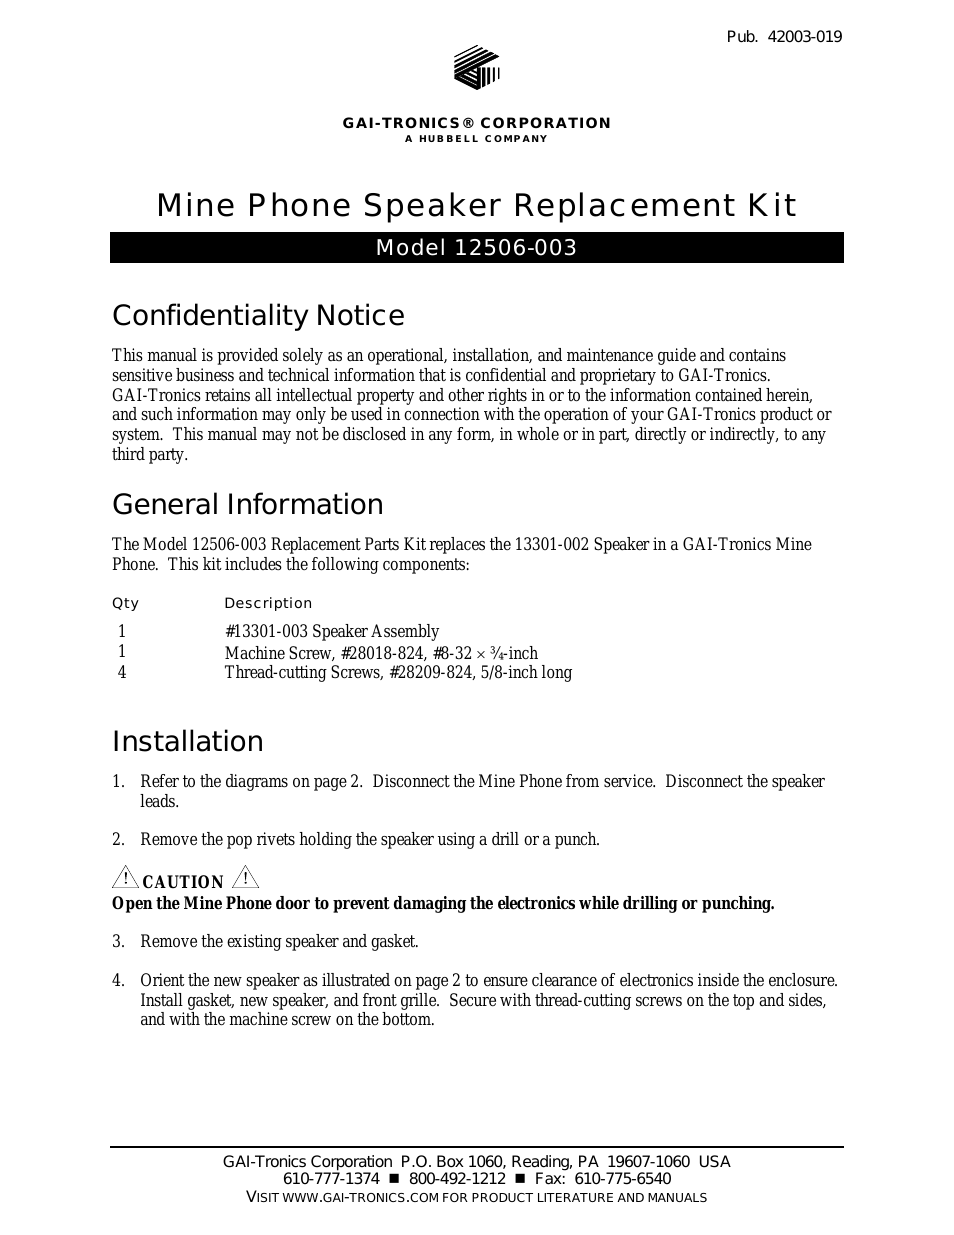 12506-003 Mine Phone Speaker